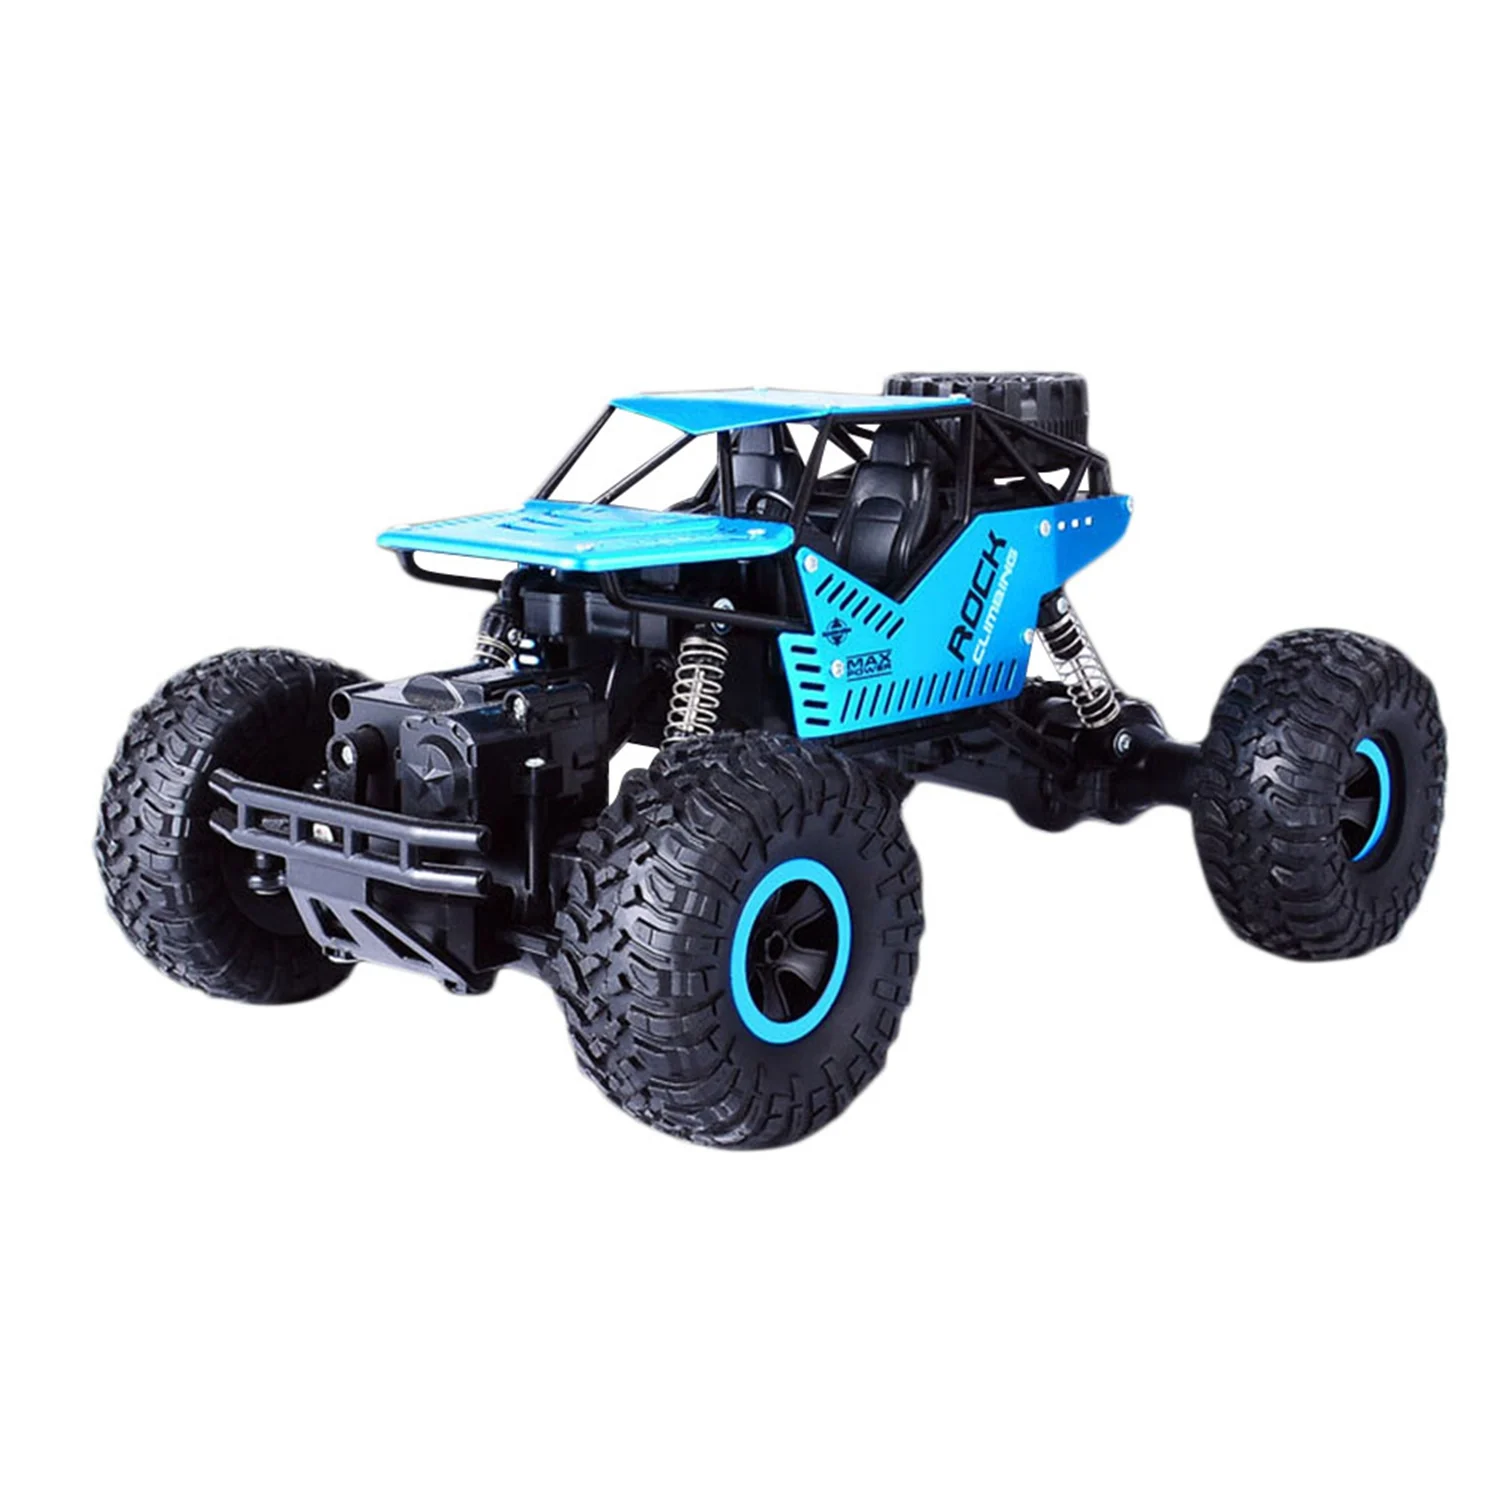 Rc автомобиль 1:18 4Wd 2,4 ГГц дистанционное управление гусеничный мини внедорожный автомобиль скорость рок Ровер игрушки для детей подарок на день рождения - Цвет: Blue